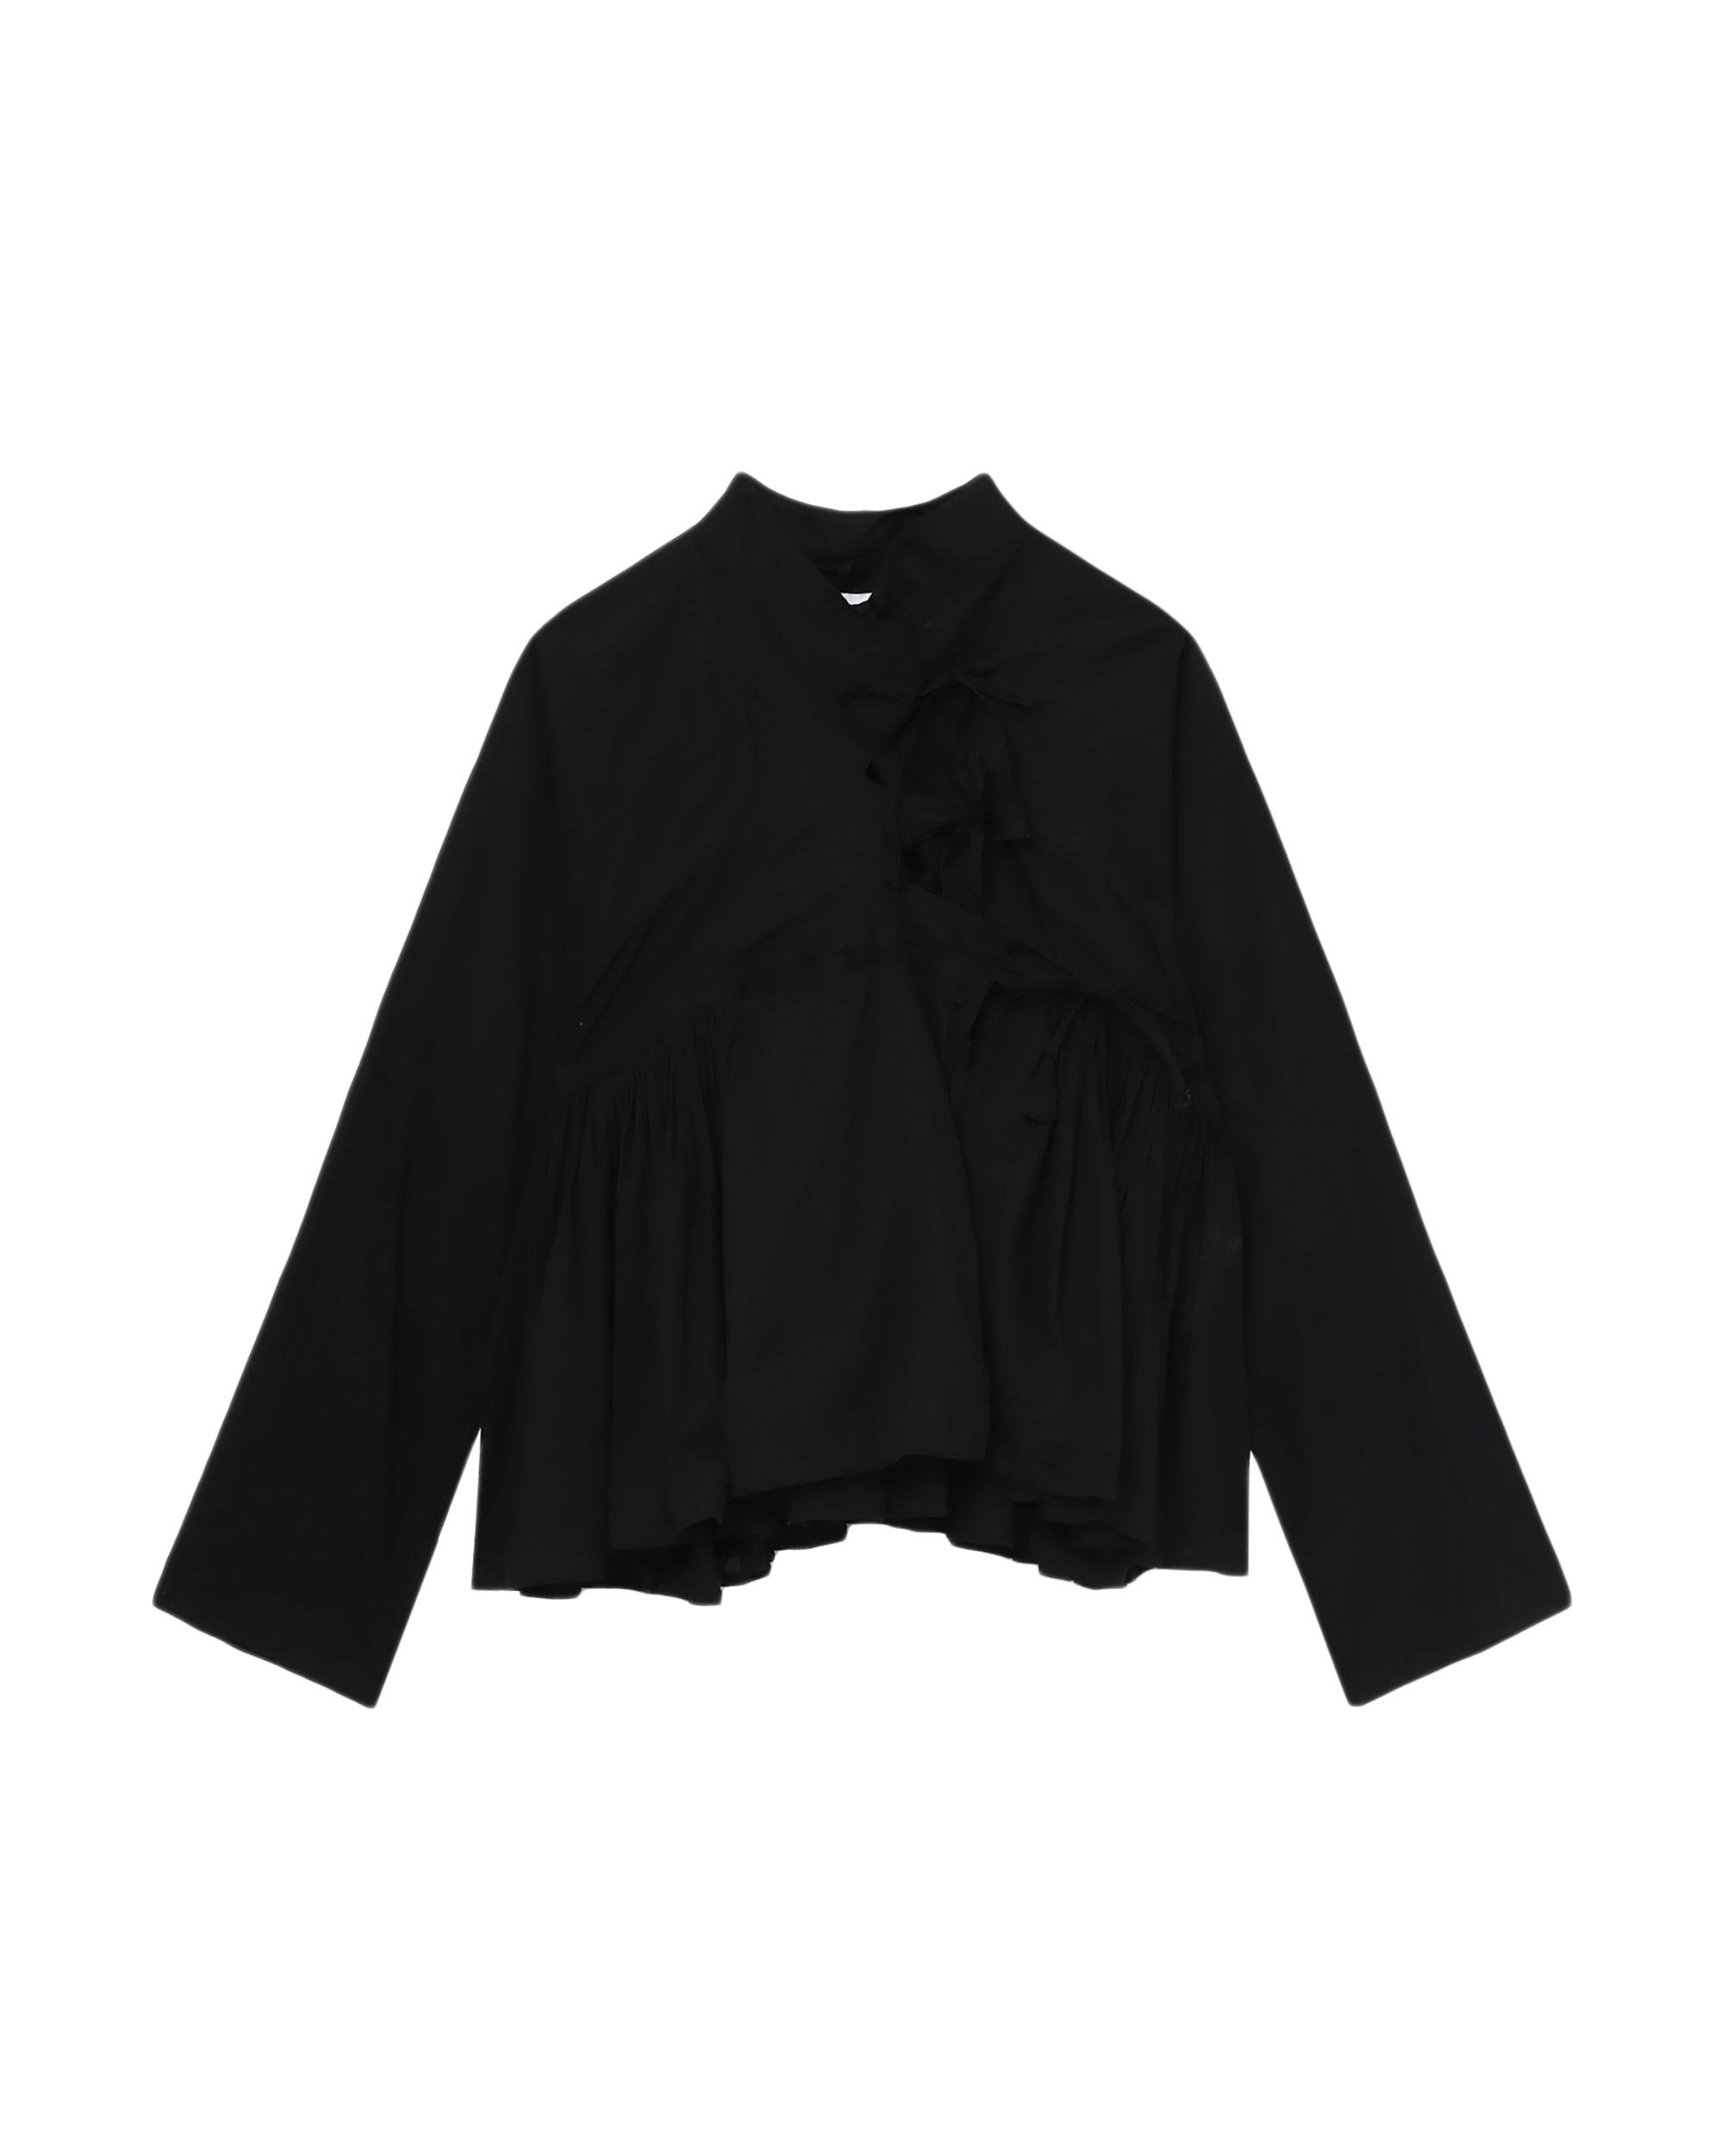 Asymmetric blouse by TAO